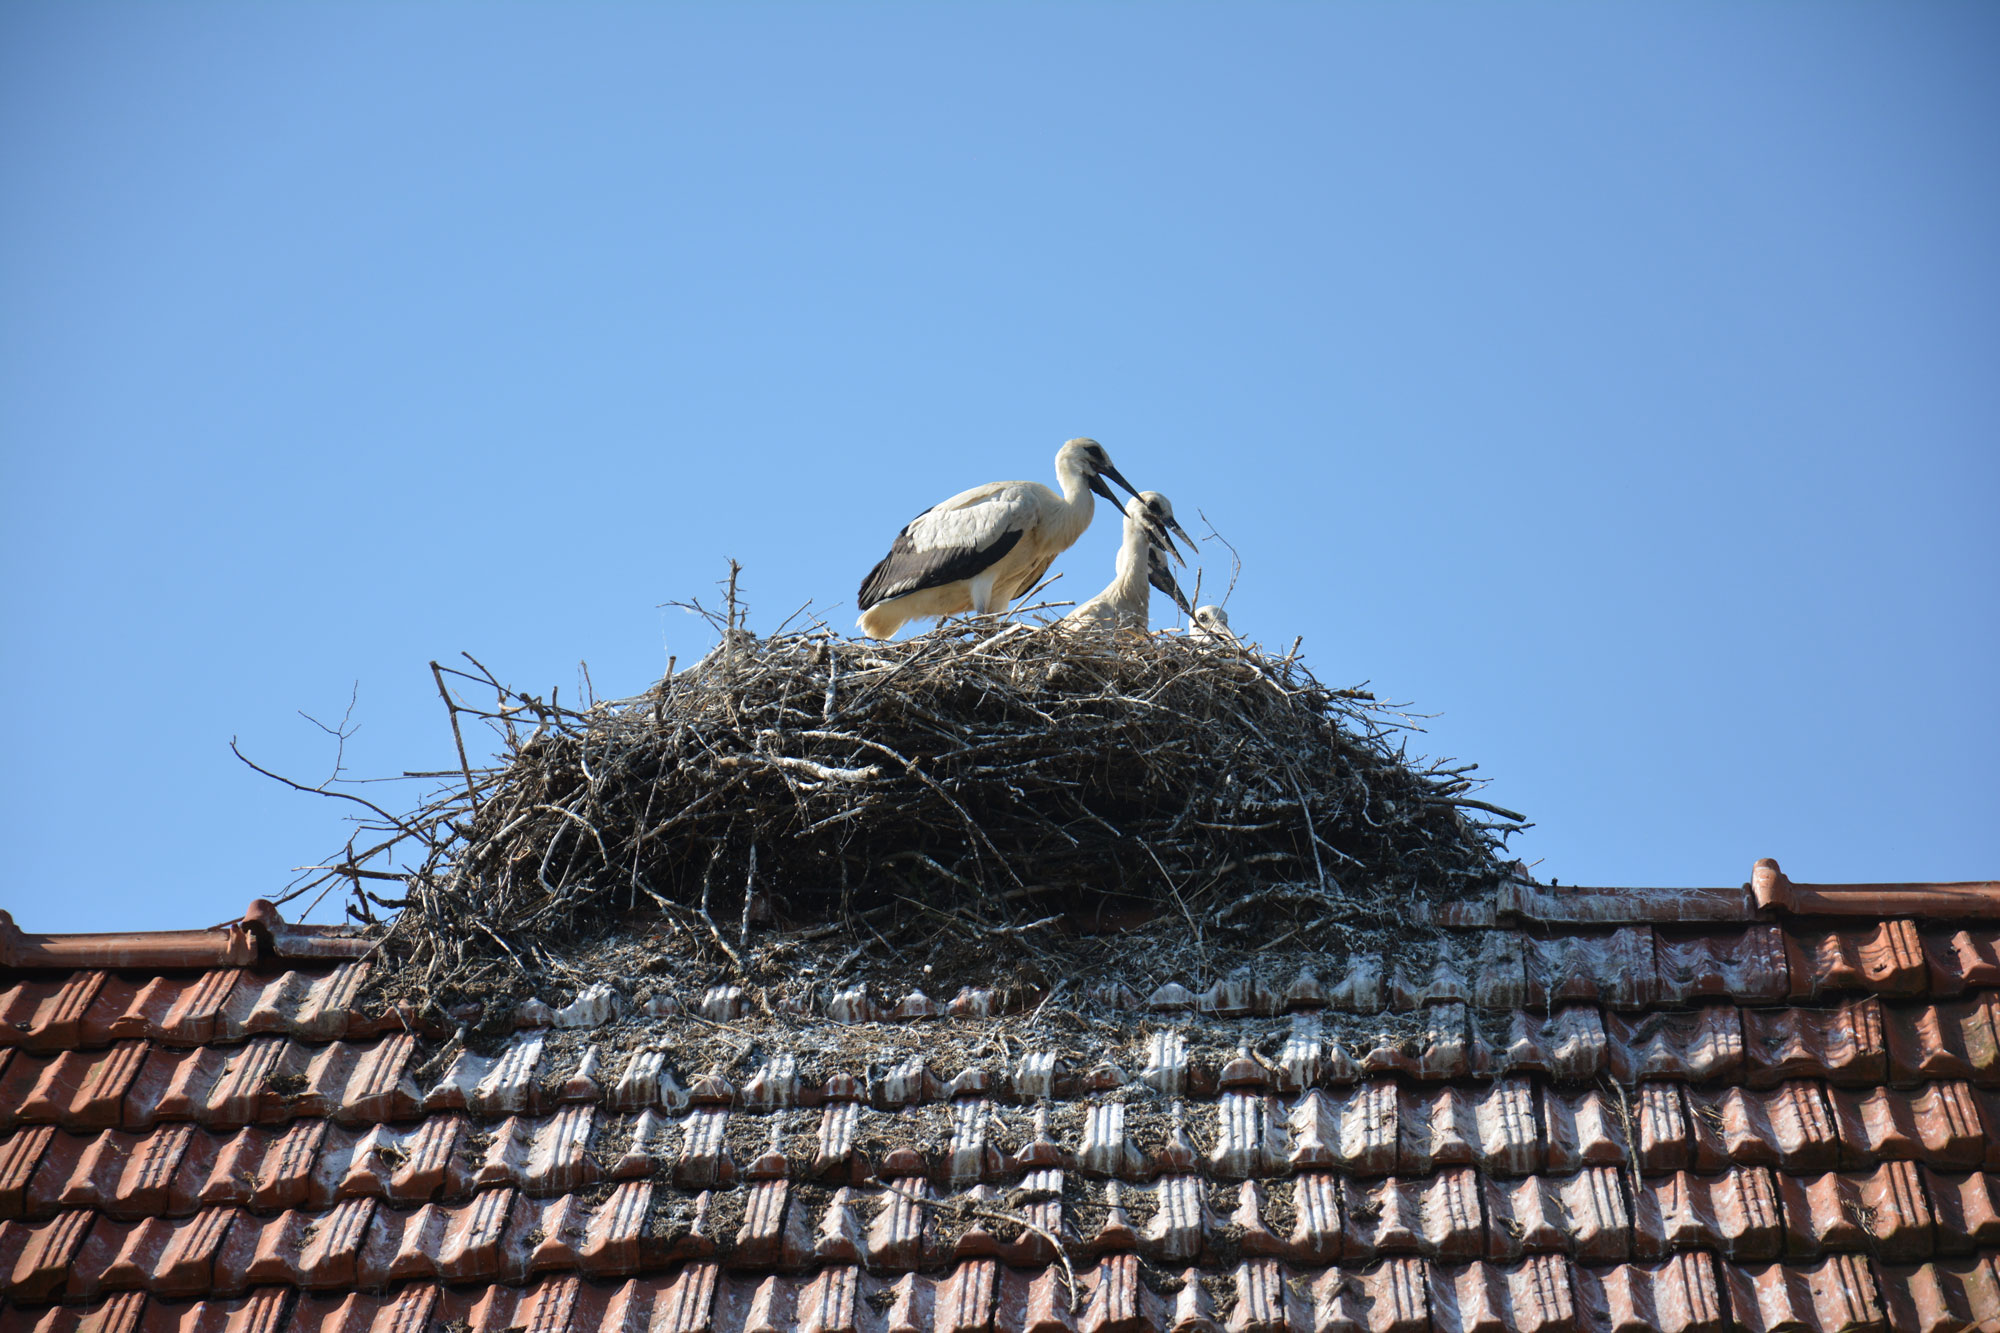 Isplata naknada za rodina gnijezda na krovovima objekata u 2019. godini